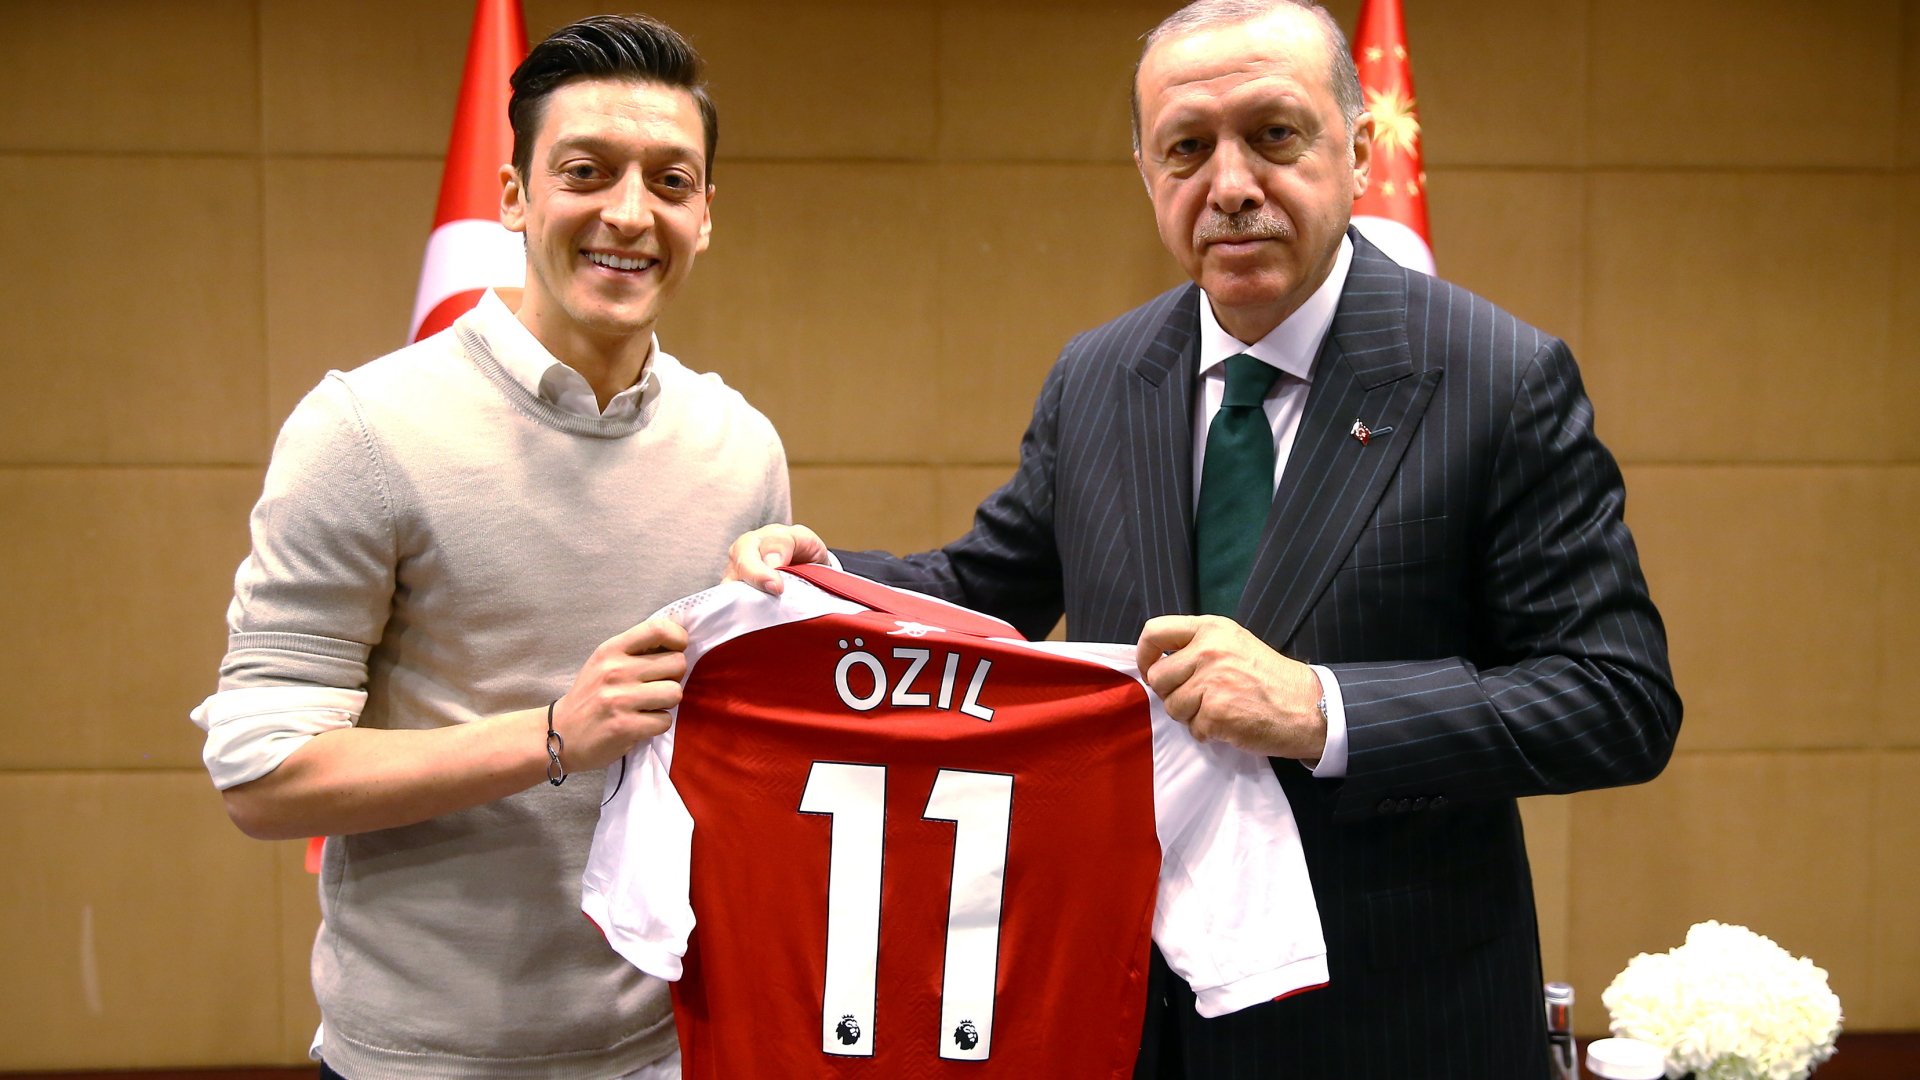 Özil überreicht Erdogan ein Trikot | TURKISH PRESIDENTAL PRESS OFFICE